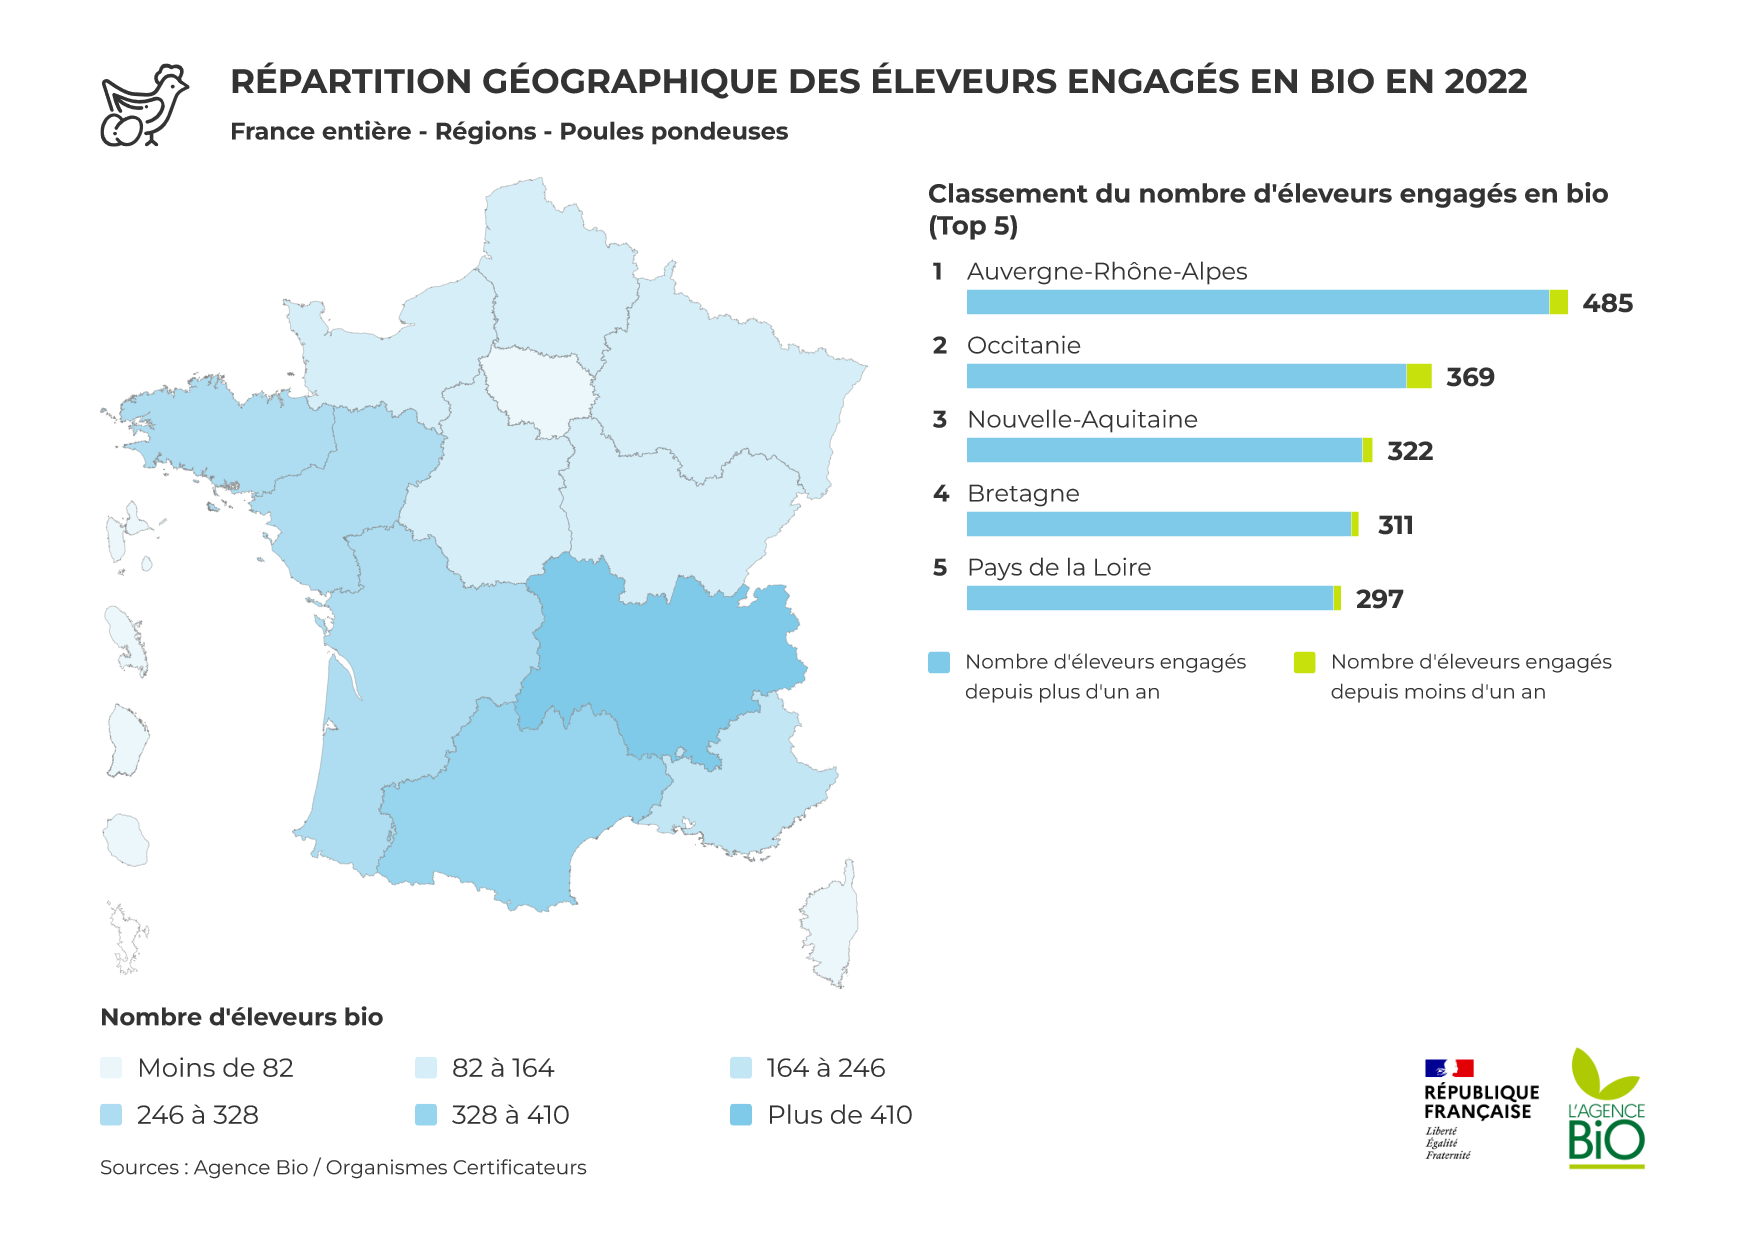 Répartition des élevages de poules pondeuses bio en France en 2022